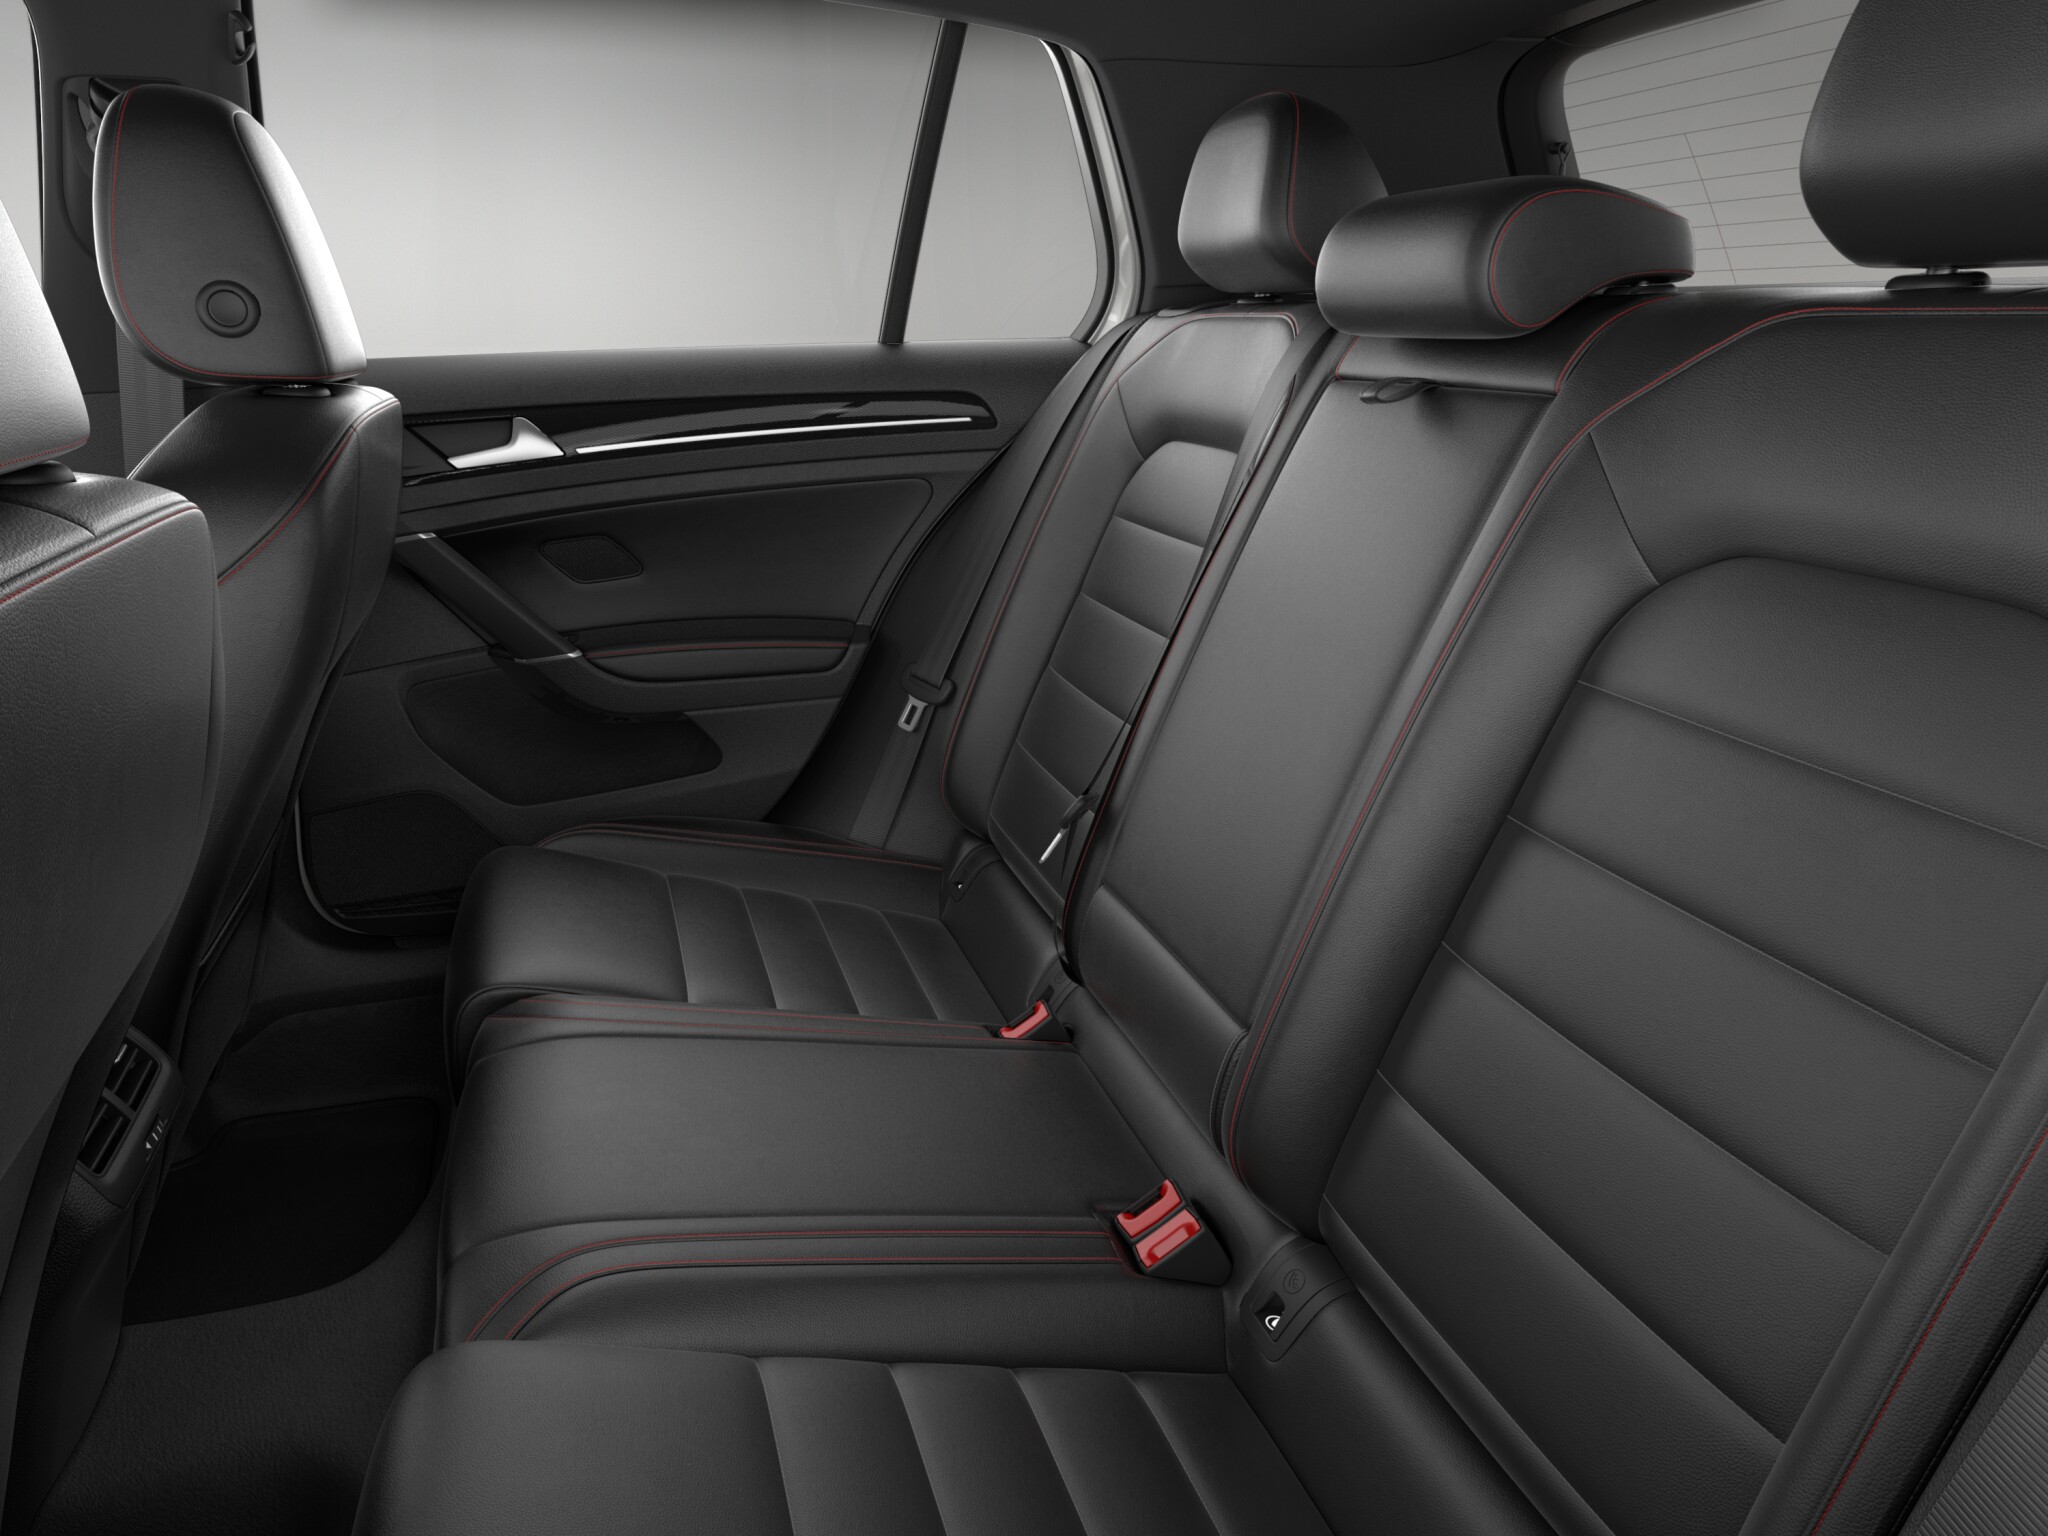 Volkswagen Golf GTI Autobann 4 Door interior rear seat view